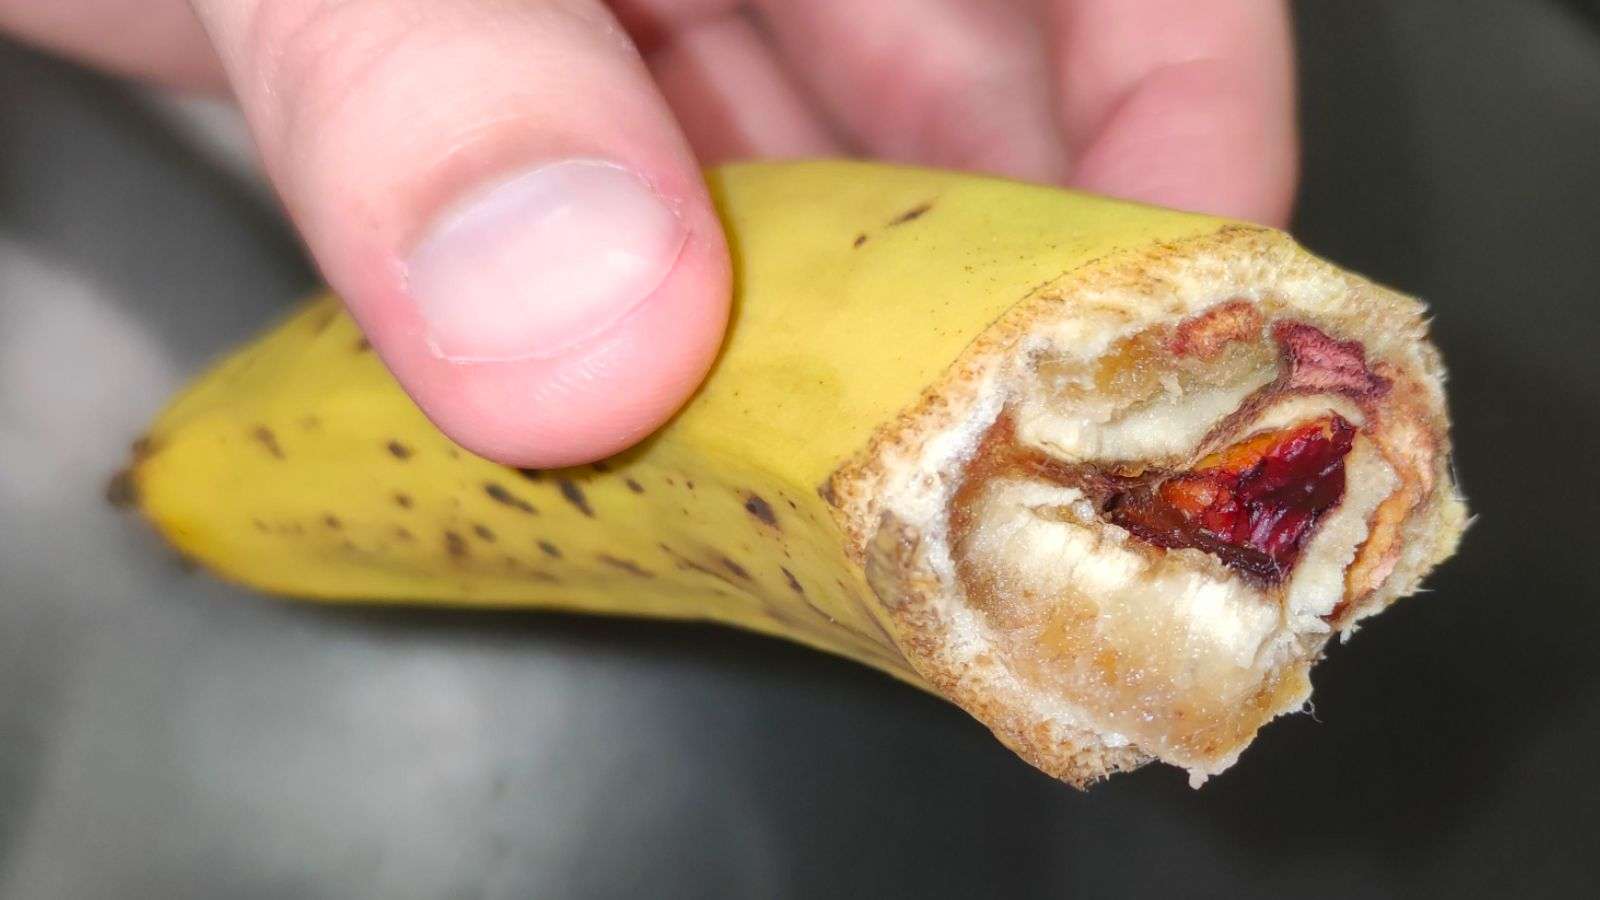 Viral Banana